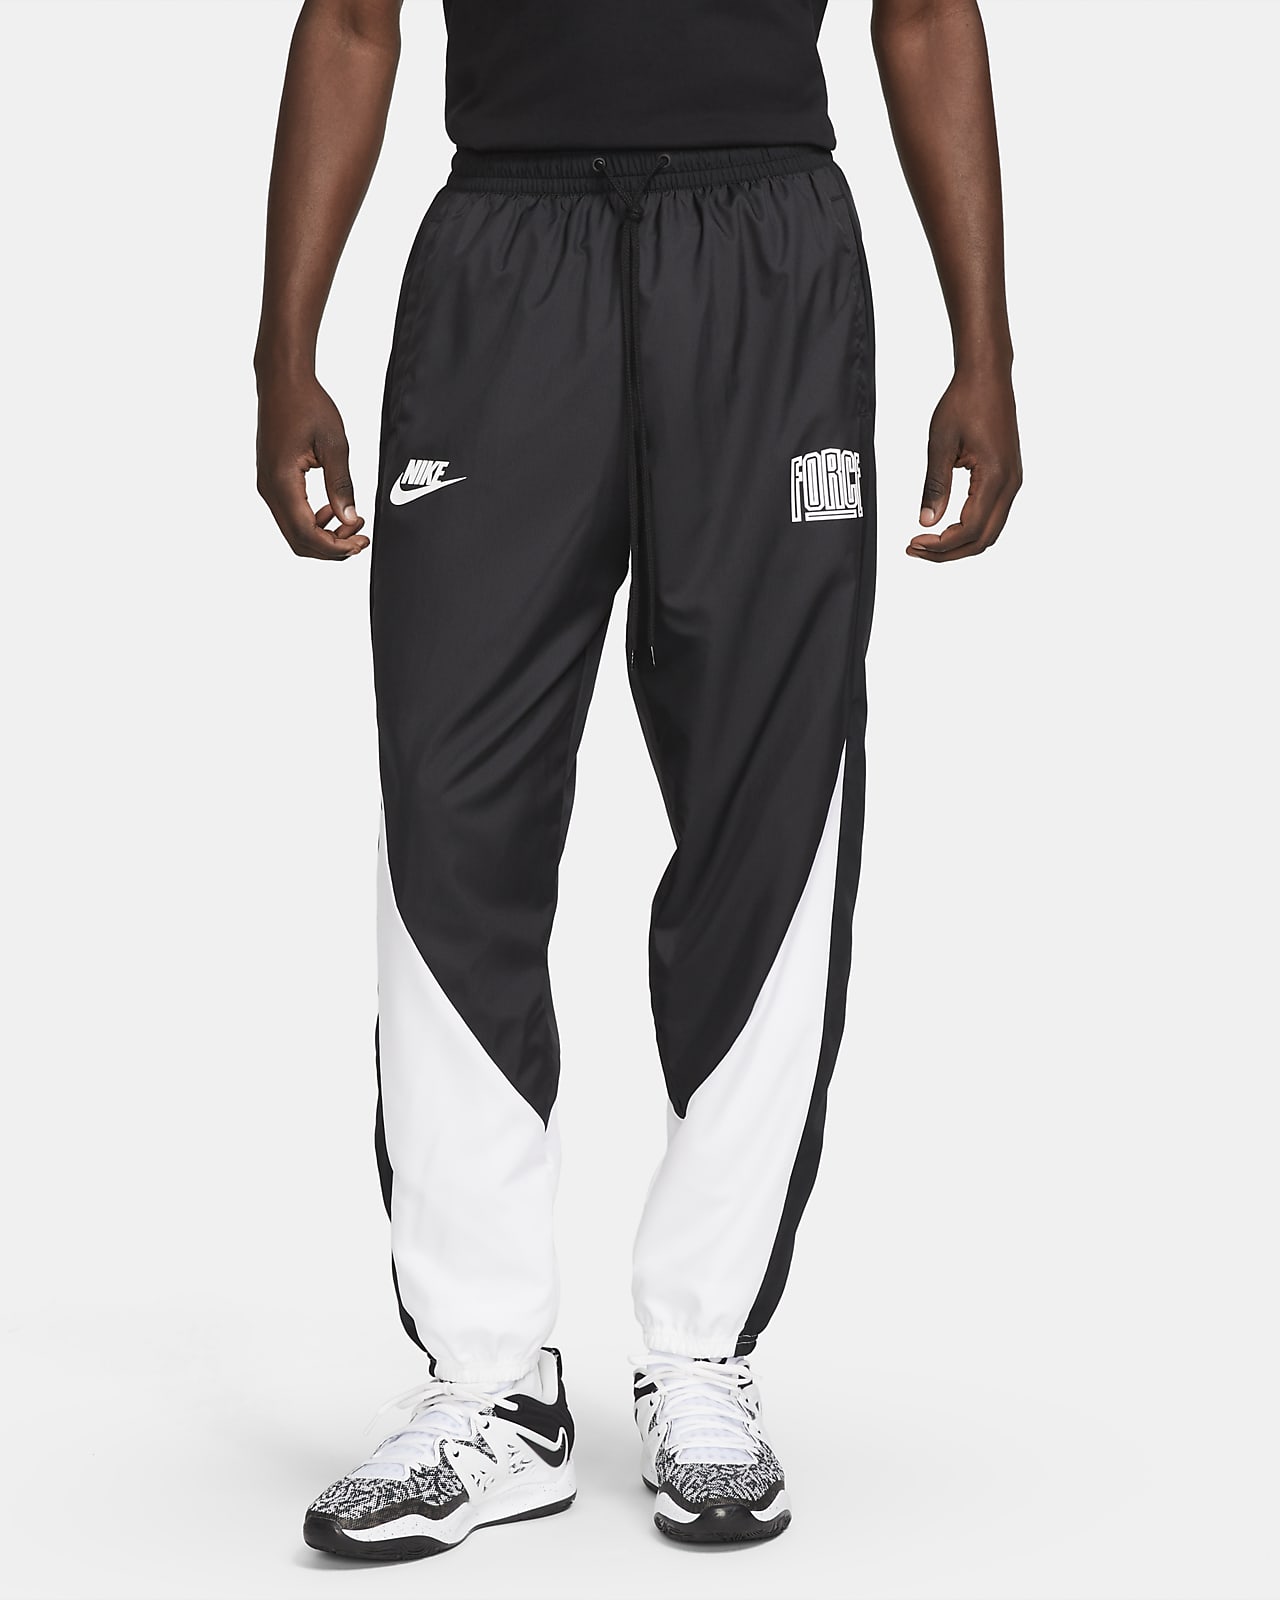 Pantalon de basket Nike Starting 5 pour homme